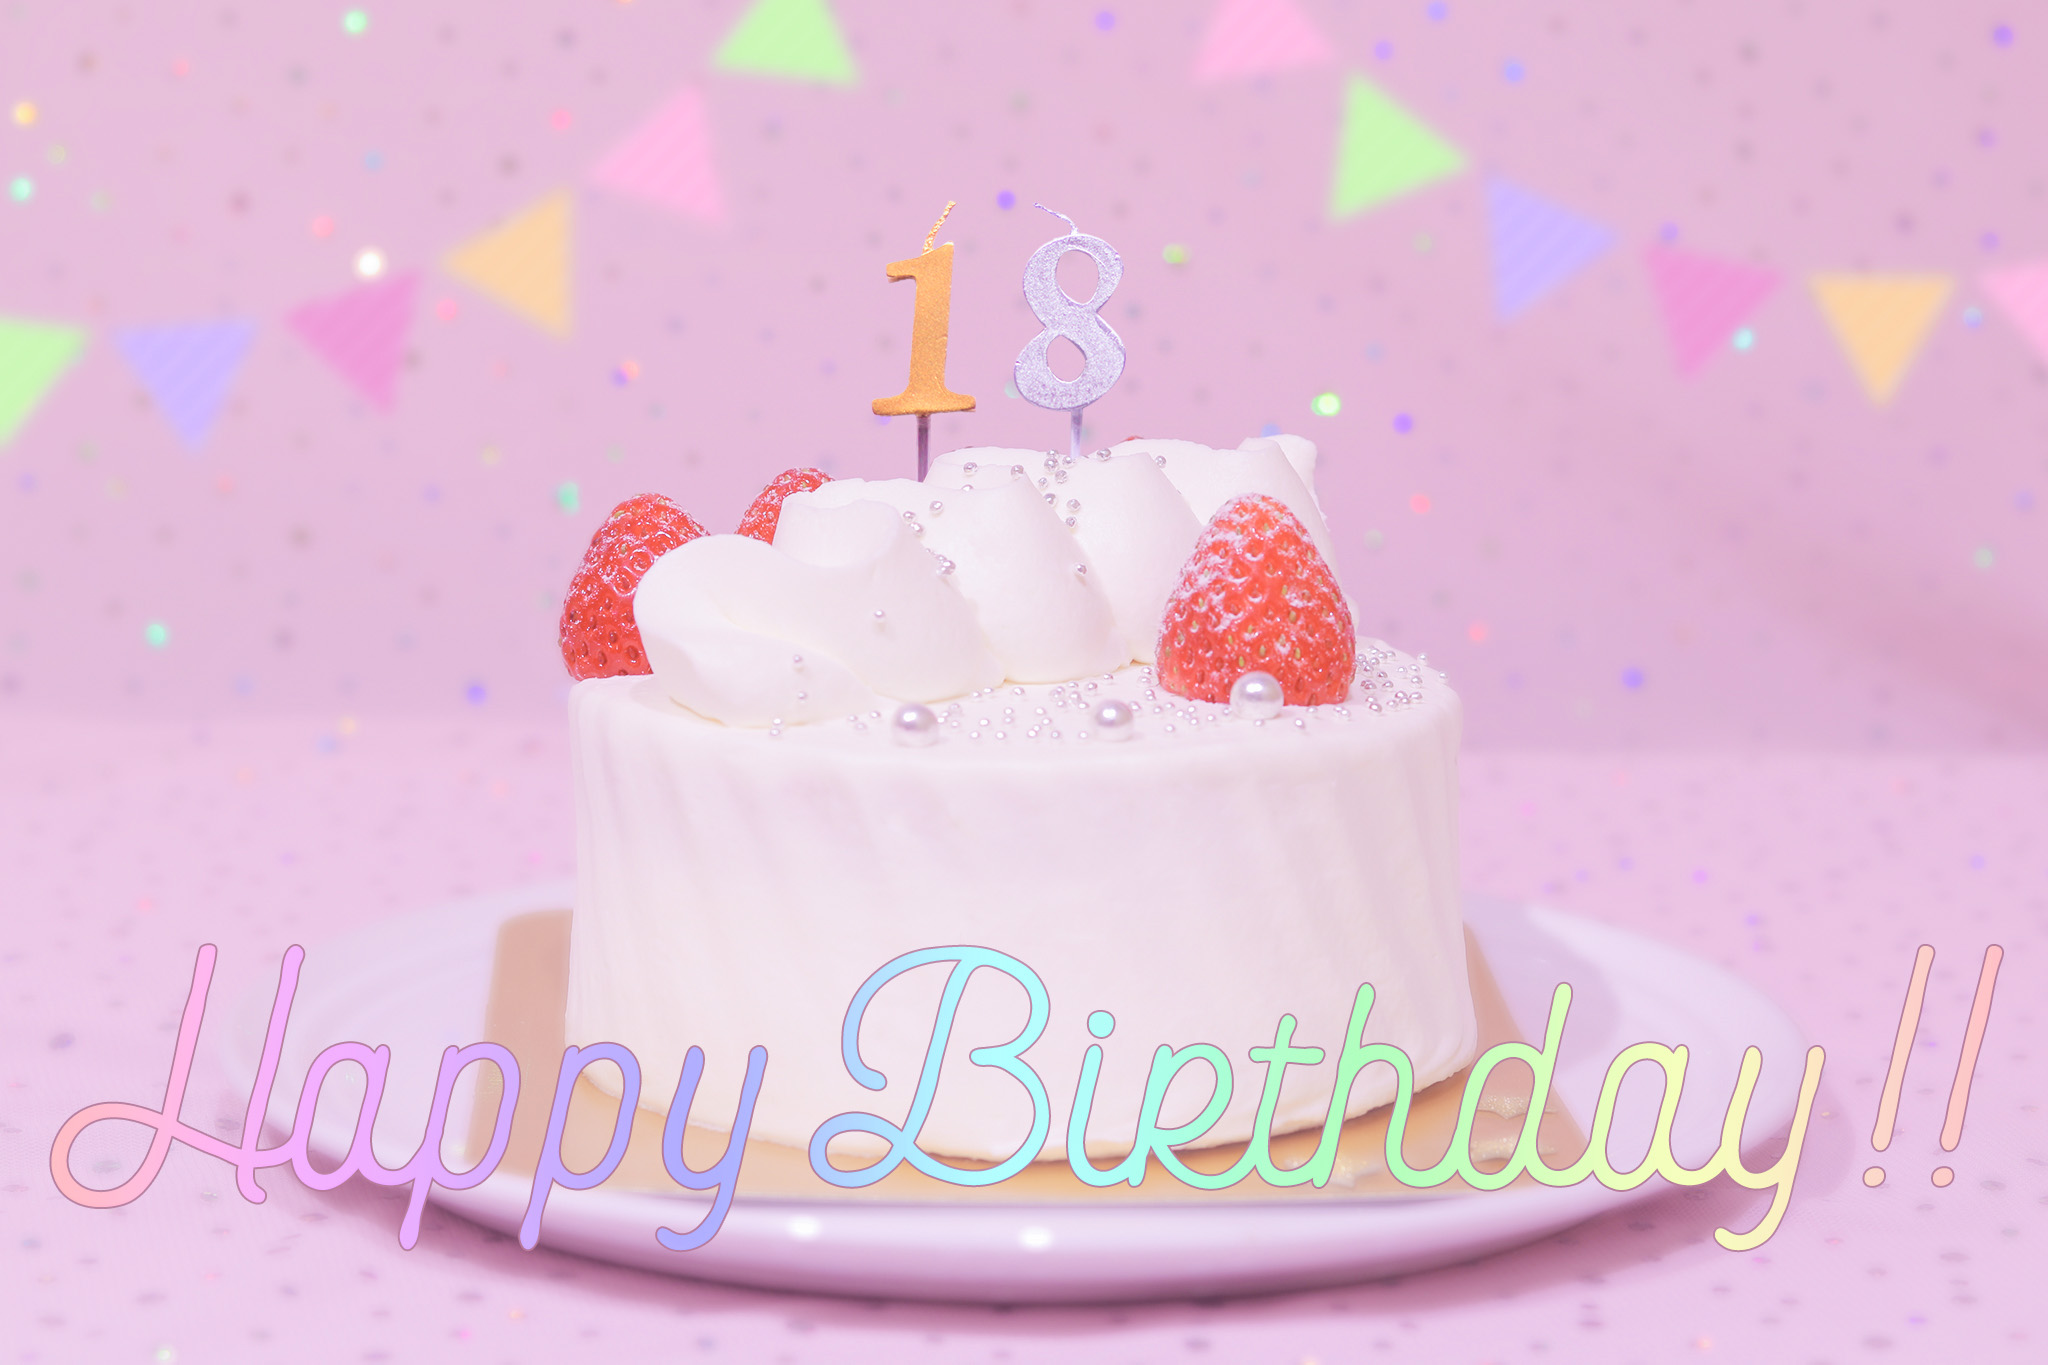 かわいい誕生日画像 ケーキとパステルカラーで可愛くお祝い 18歳編 のフリー画像 おしゃれなフリー写真素材 Girly Drop